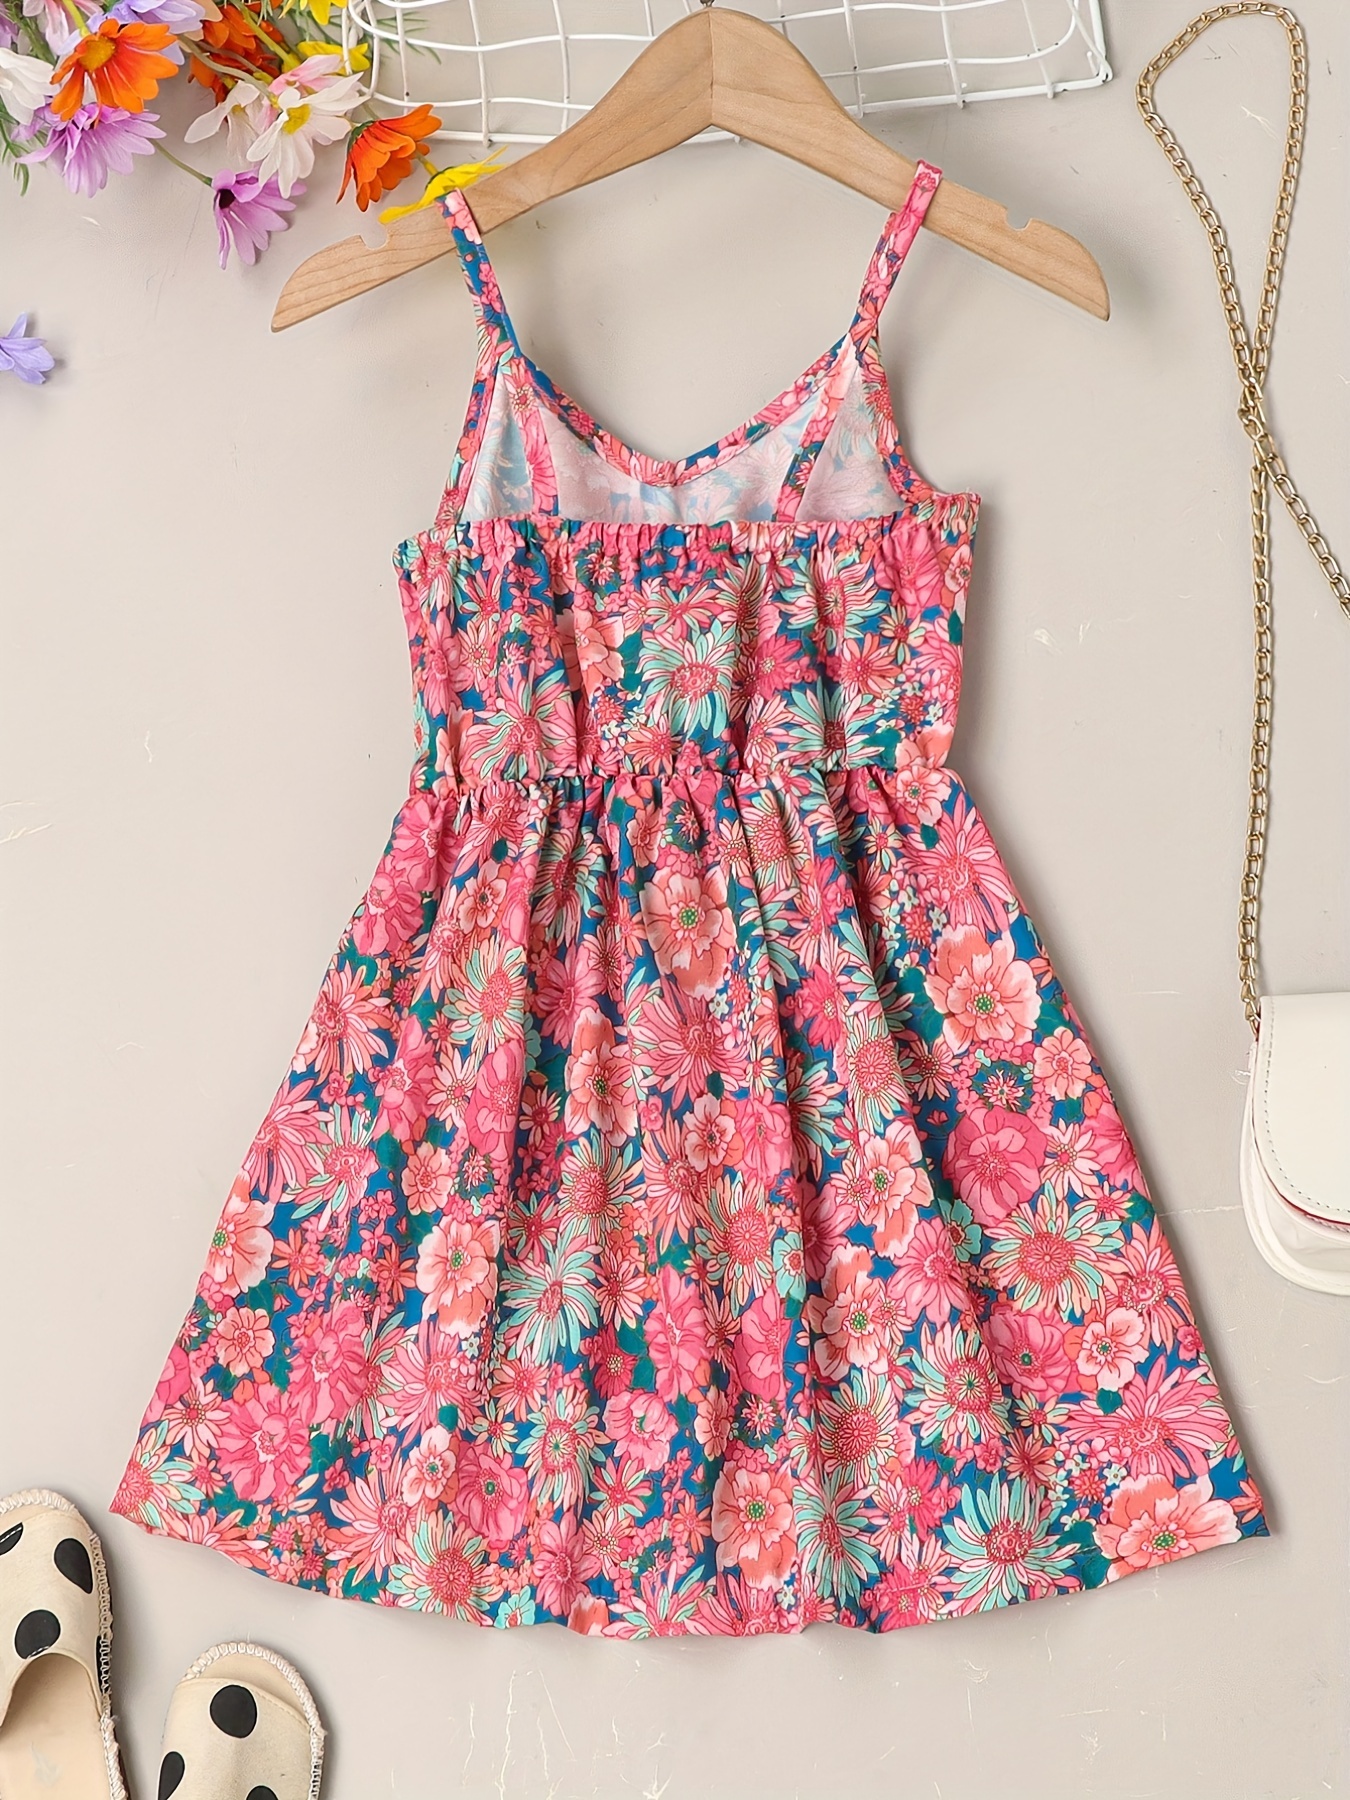 little girls cute sundress floral pattern party beach dress v neck elastic waist camisole dress for summer details 16